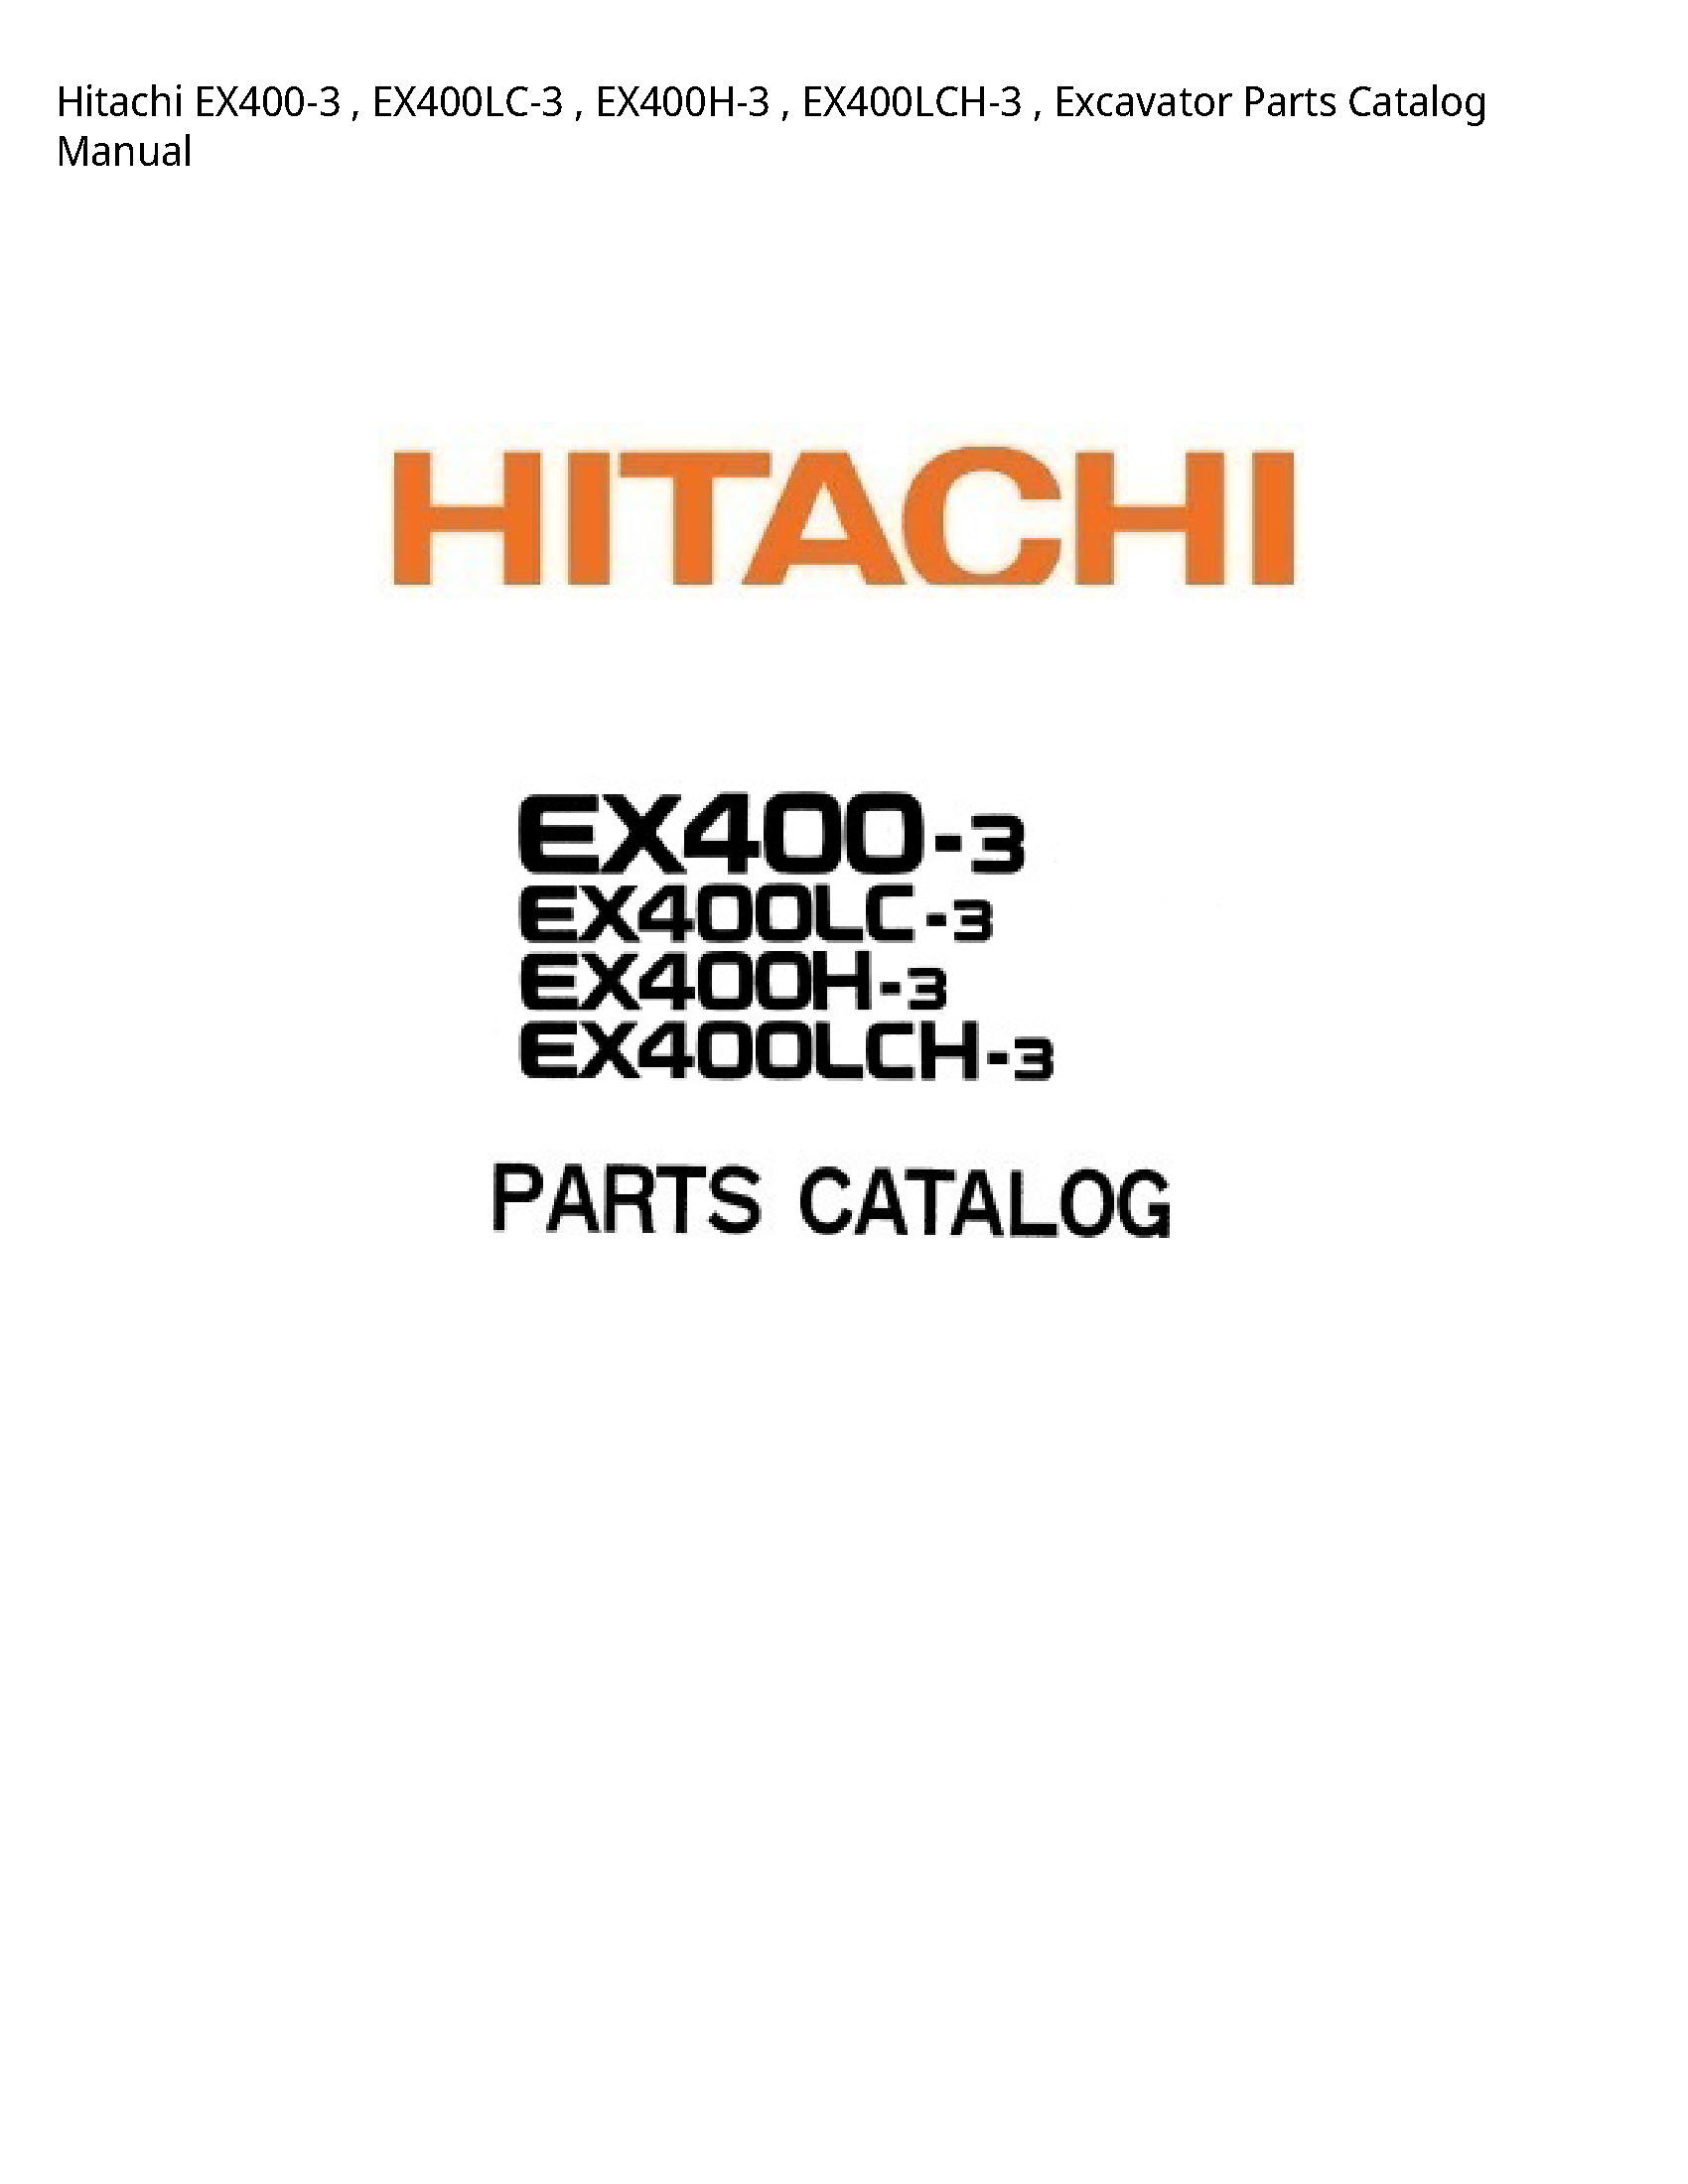 Hitachi EX400-3 Excavator Parts Catalog manual